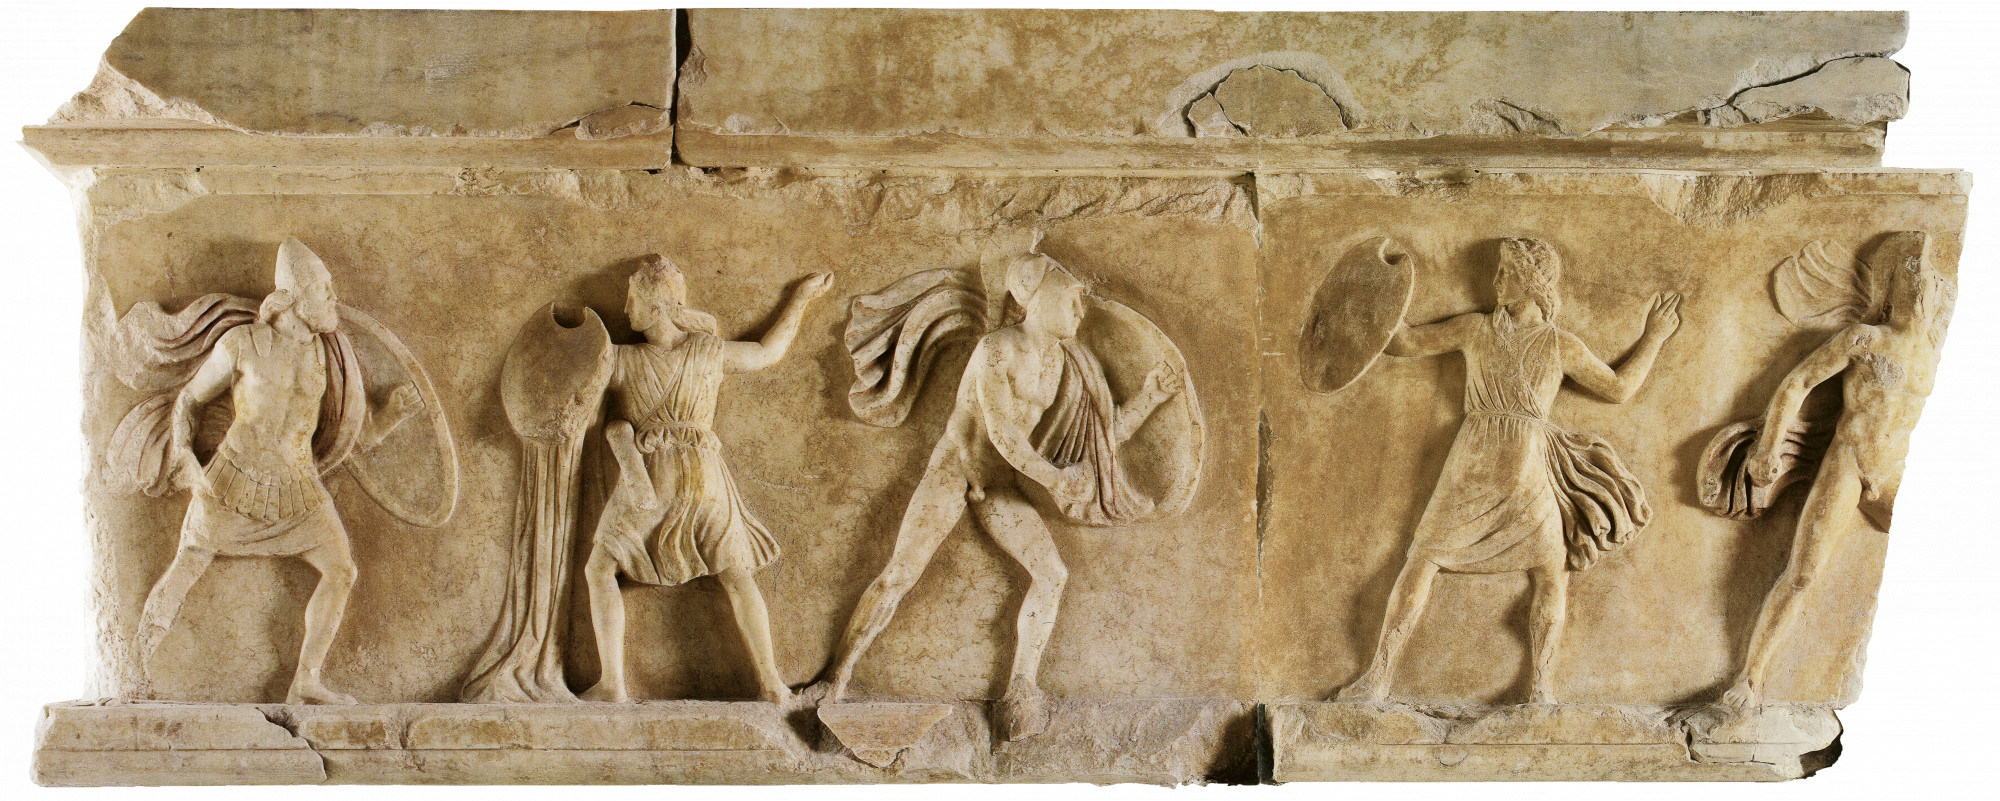 Ήταν τελικά αόρατες οι γυναίκες στην Αρχαιότητα; - Η διαφορά ανάμεσα σε Αθηναίες και Σπαρτιάτισσες